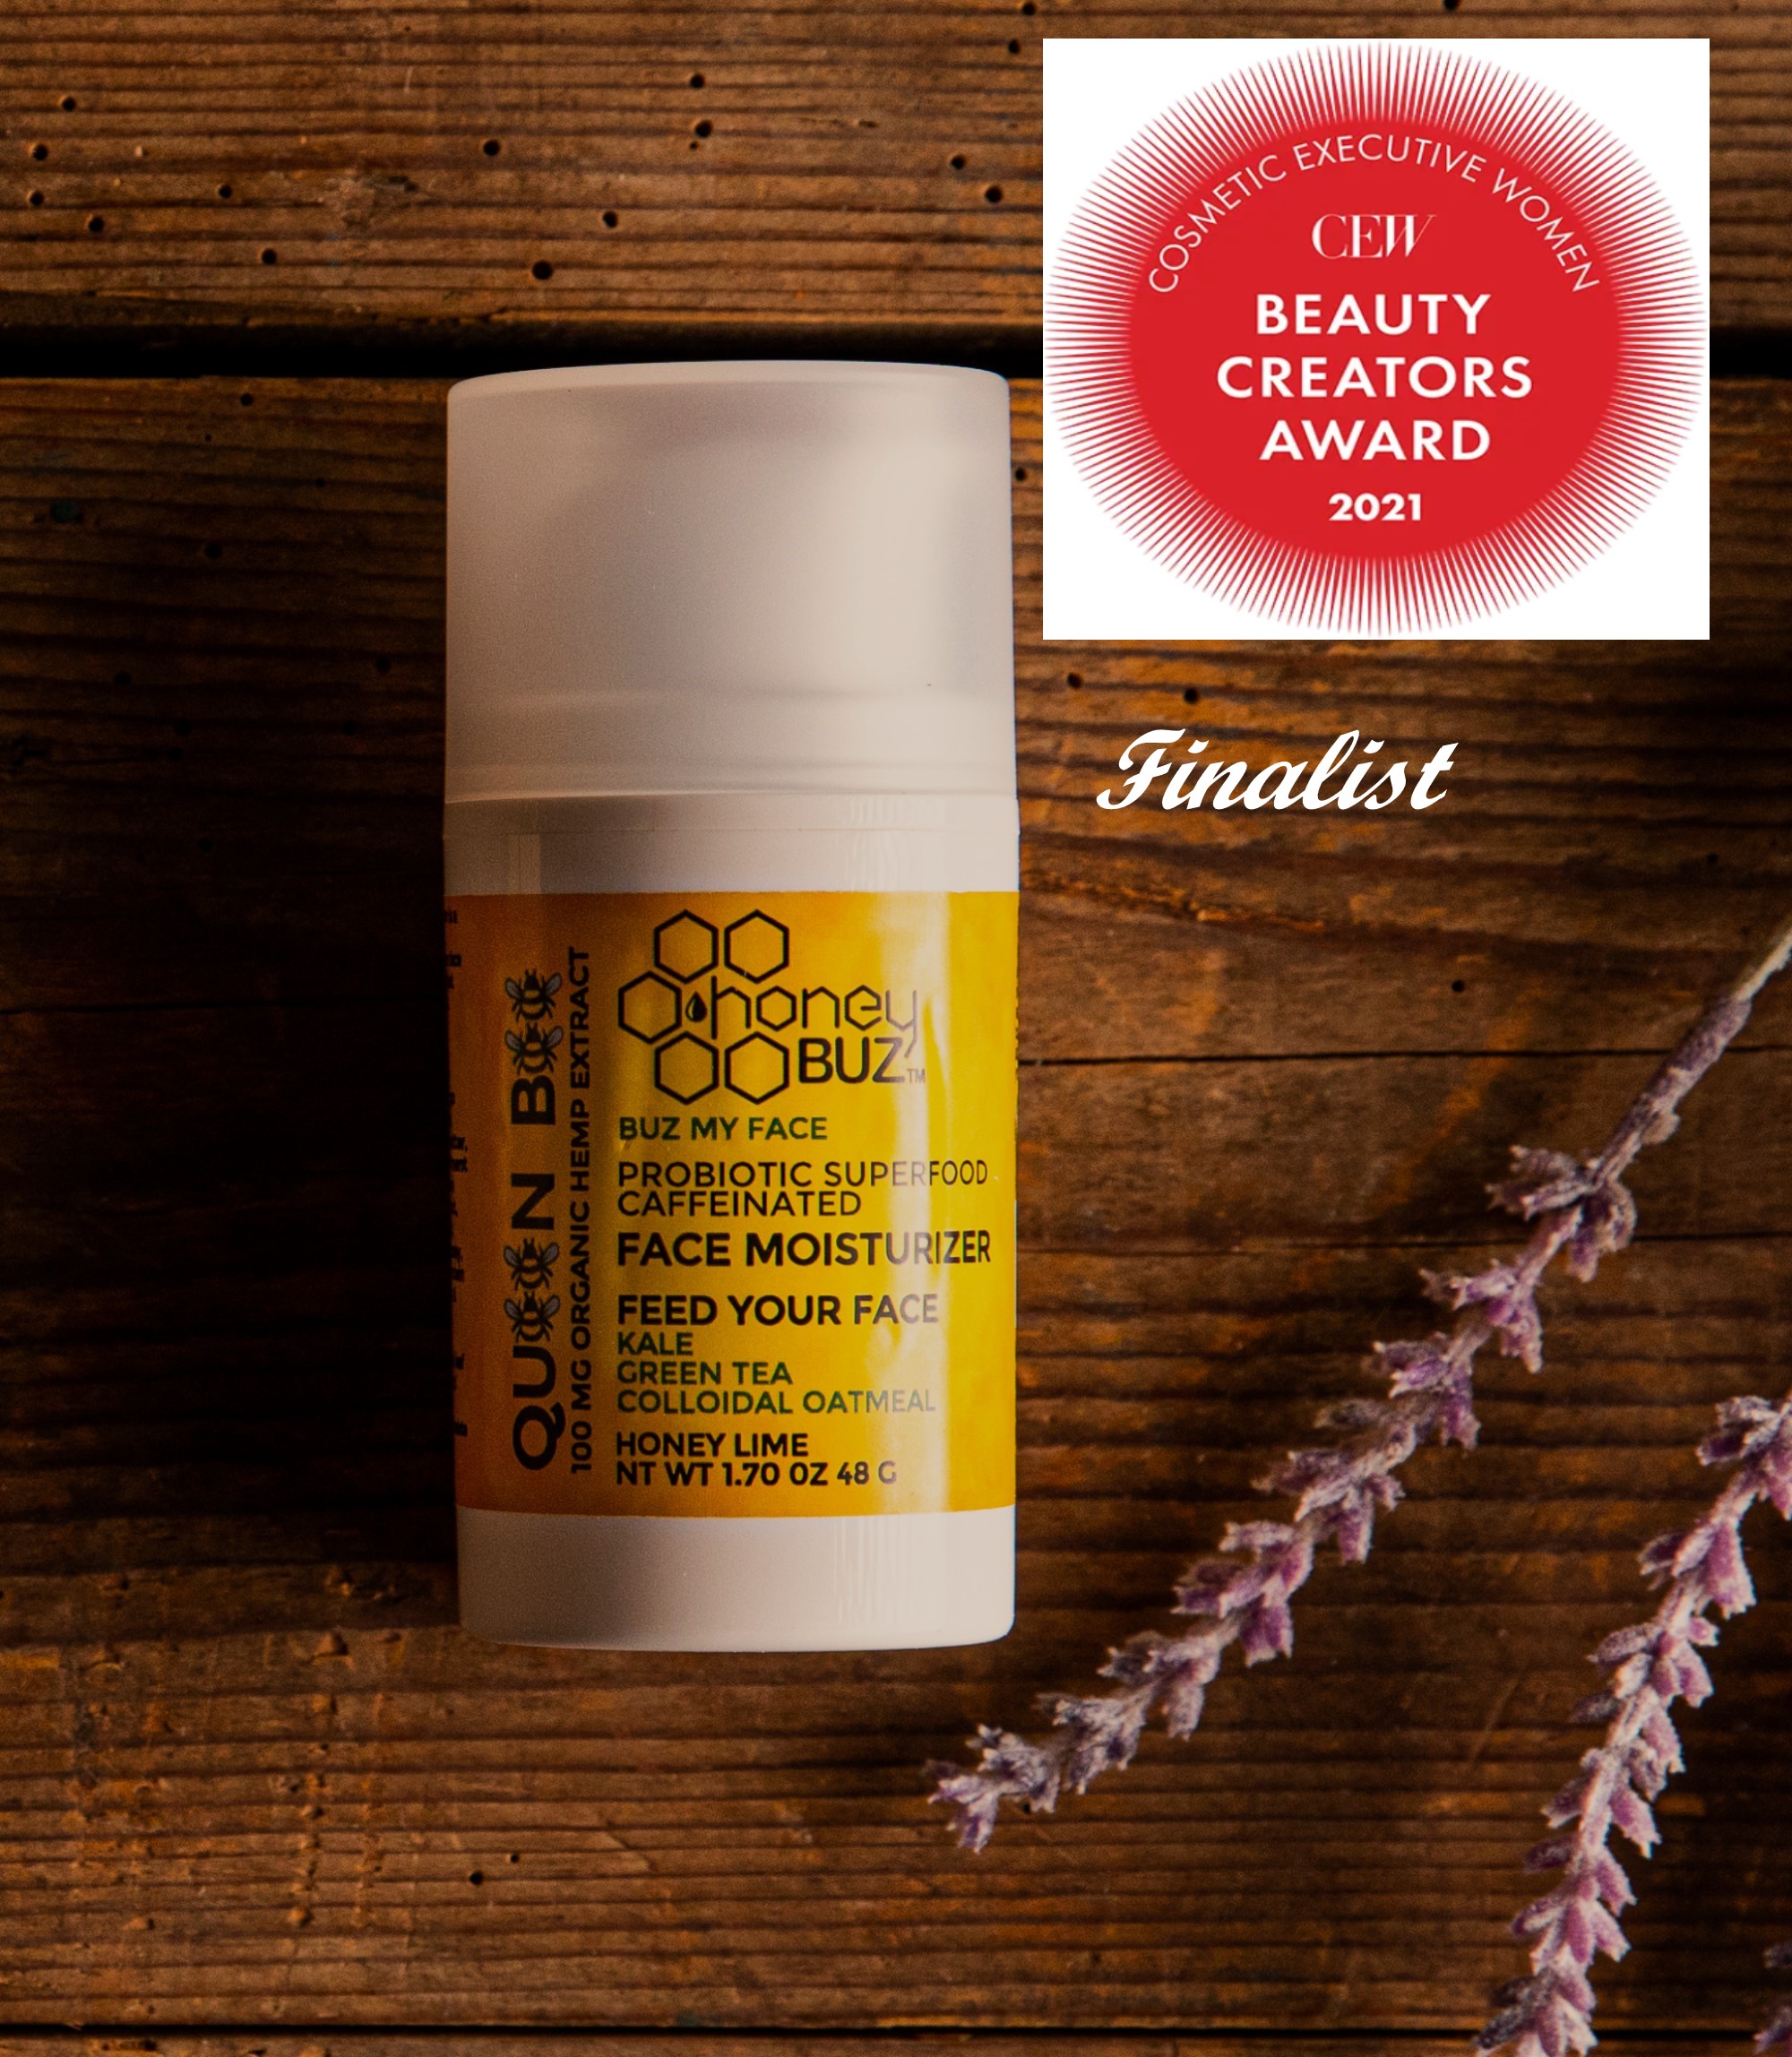 Honey Buz Queen Bee is a Finalist in the CEW Beauty Creators Awards